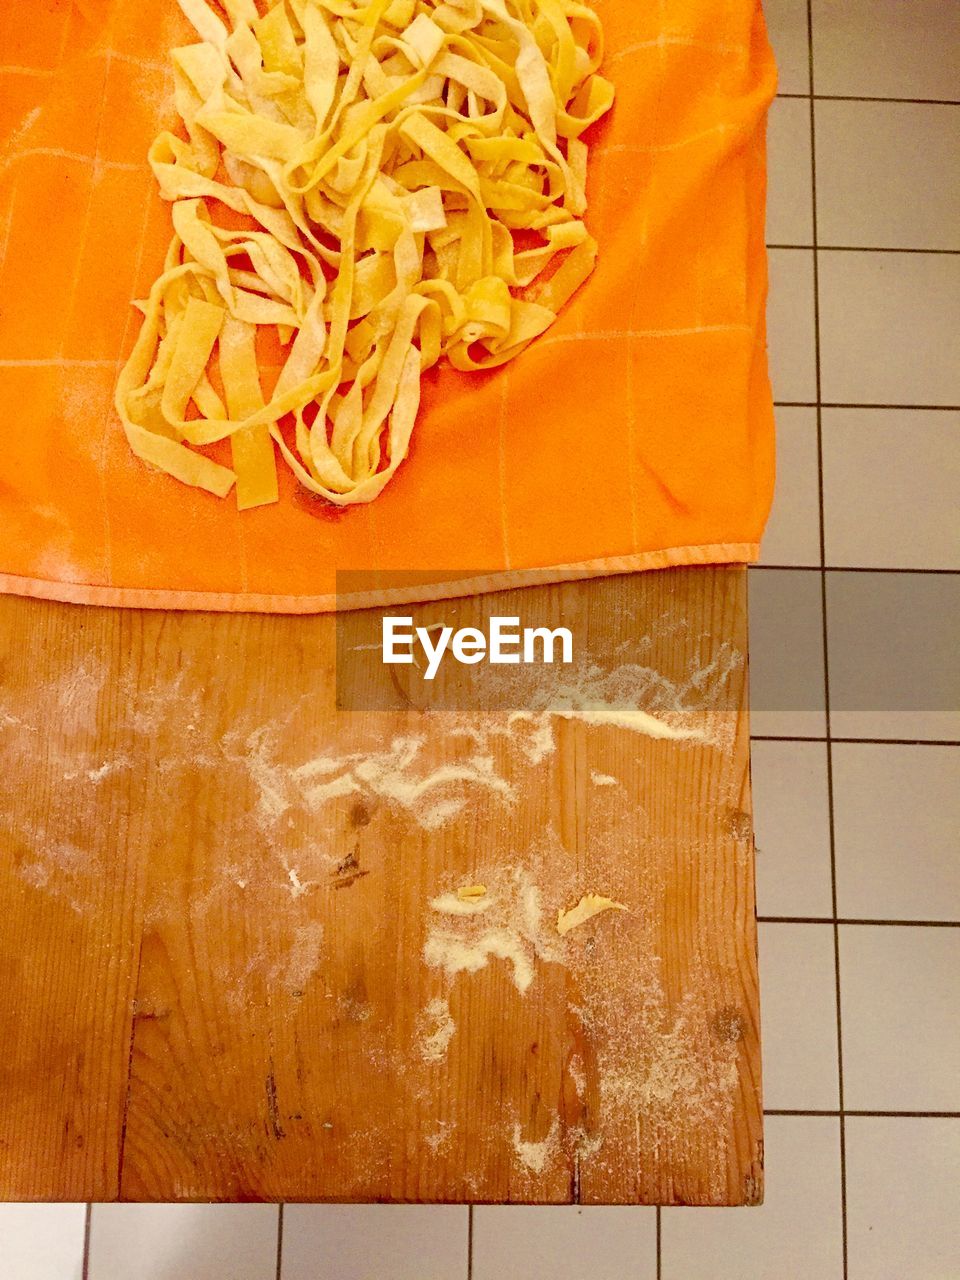 Raw pasta on cutting board